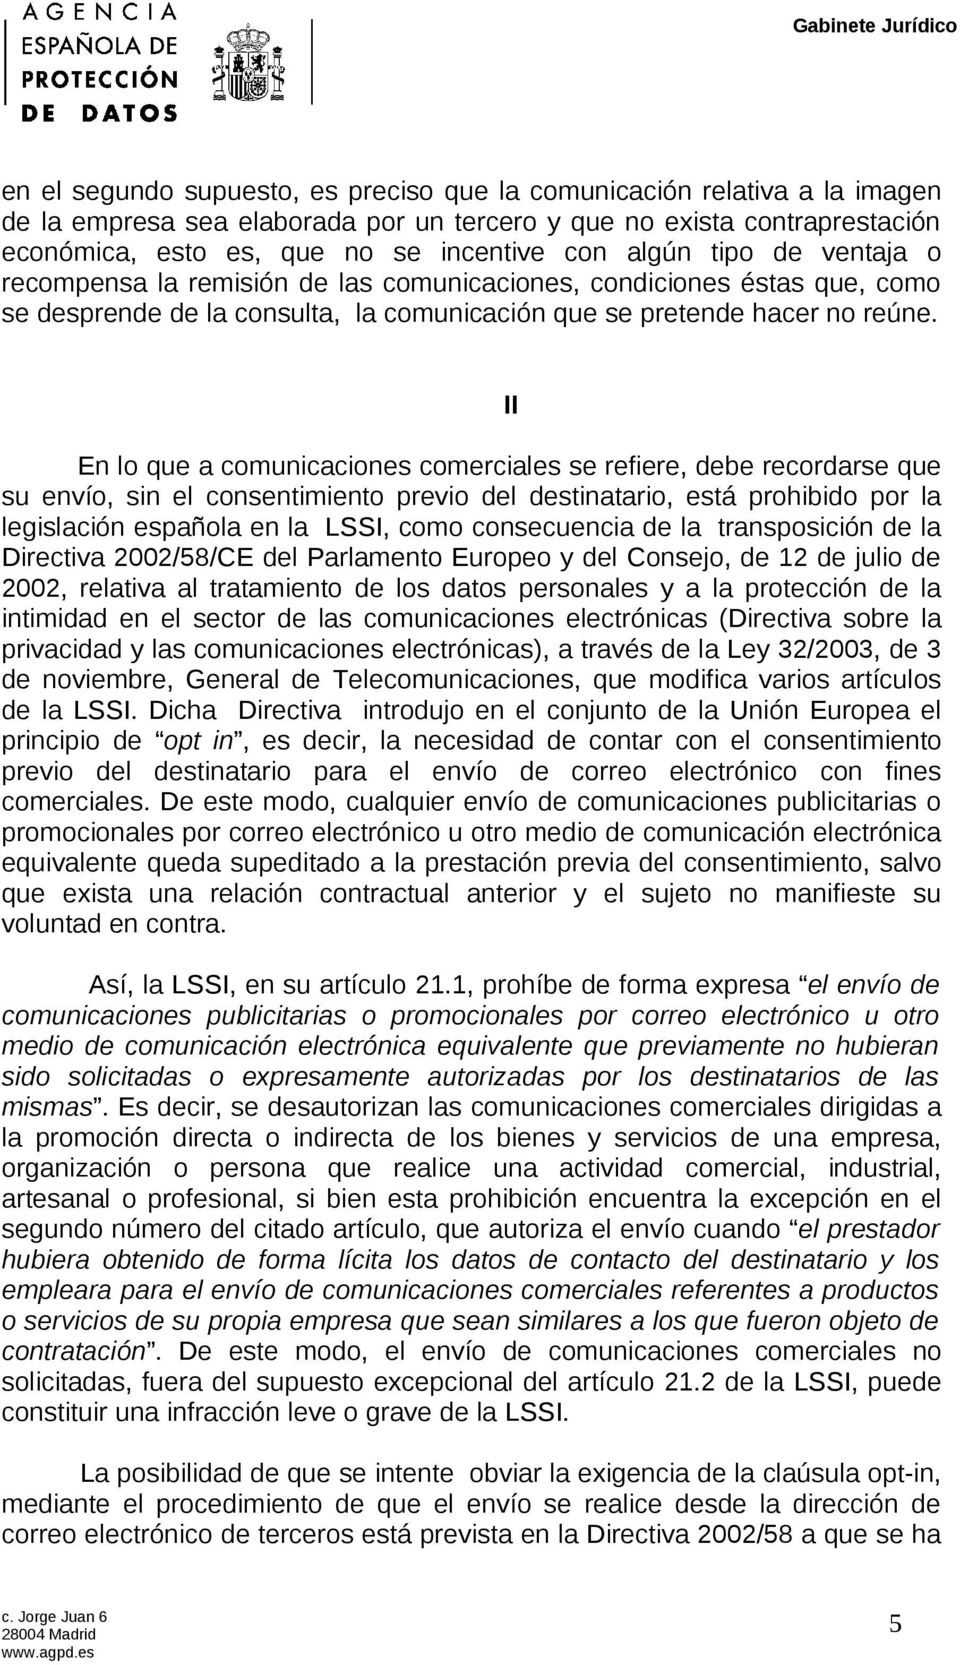 En lo que a comunicaciones comerciales se refiere, debe recordarse que su envío, sin el consentimiento previo del destinatario, está prohibido por la legislación española en la LSSI, como